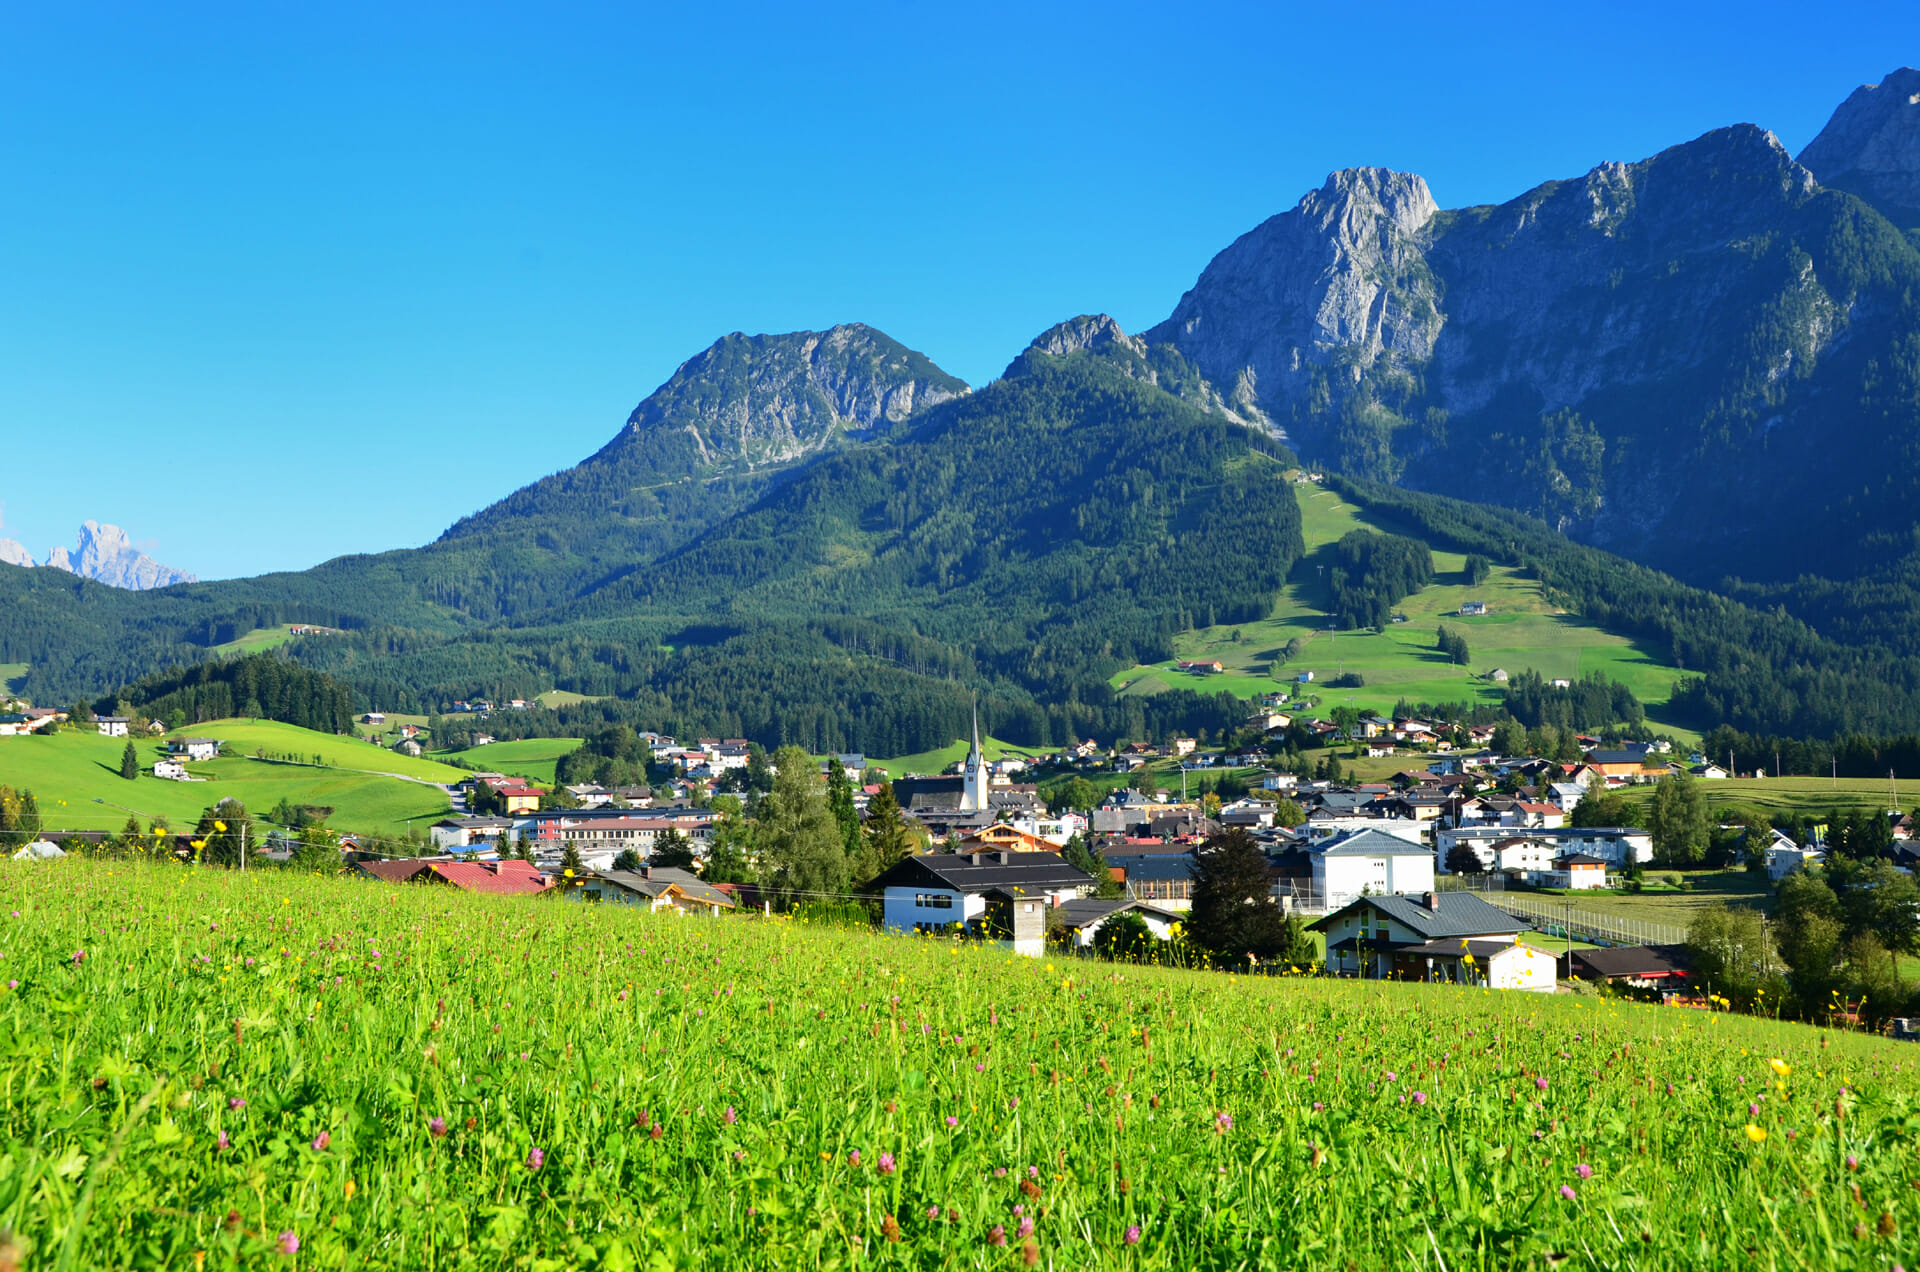 Blick auf Abtenau, grüne Wiese im Vordergrund, bewaldete Berge im Hintergrund